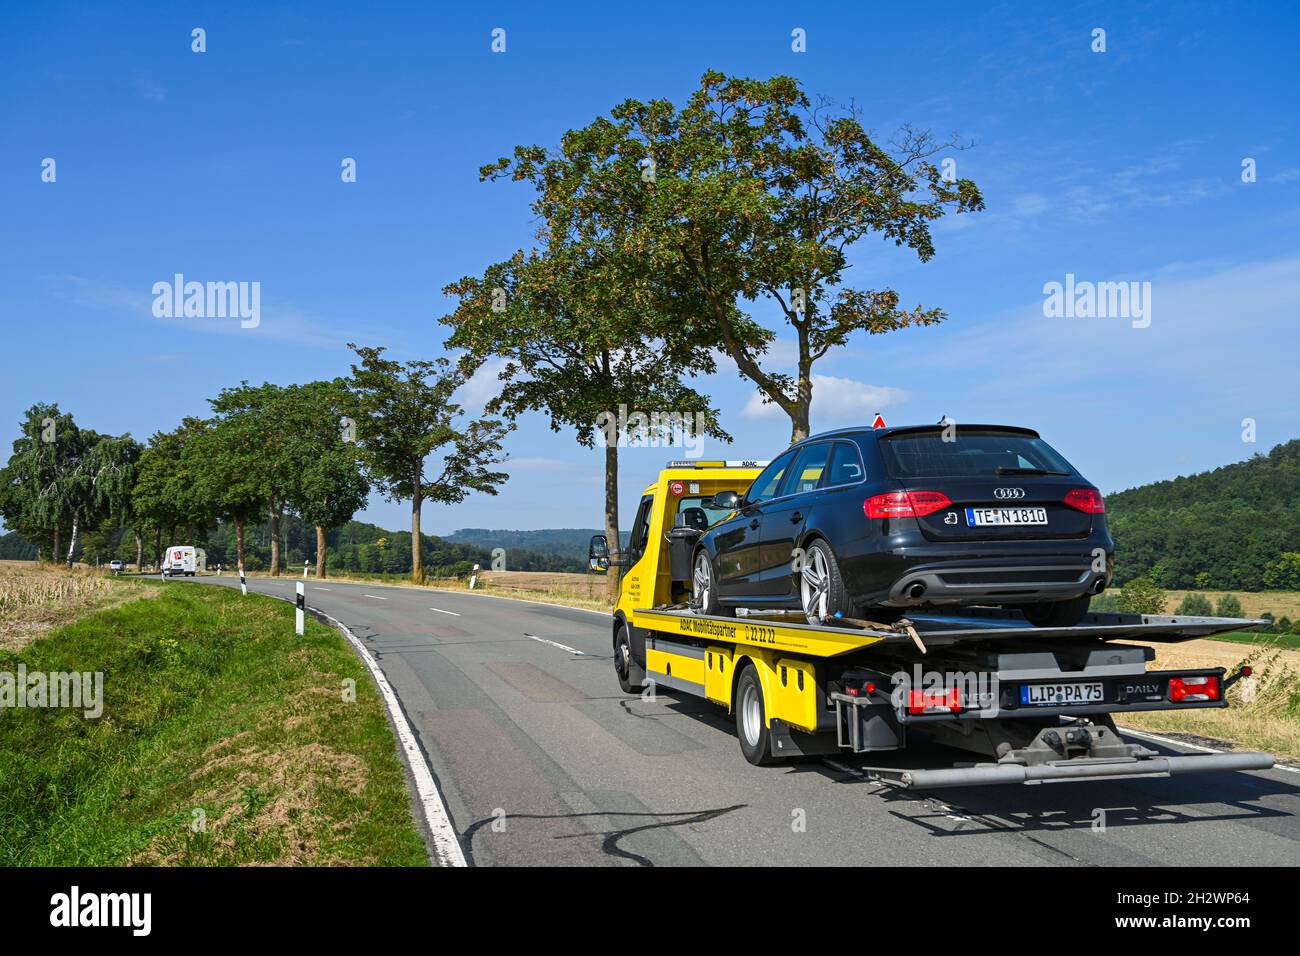 Auto und Versicherung, Schwierigkeiten beim Reisen Konzept. Jemand  Abschleppseil an anhängerzugvorrichtung Stockfotografie - Alamy